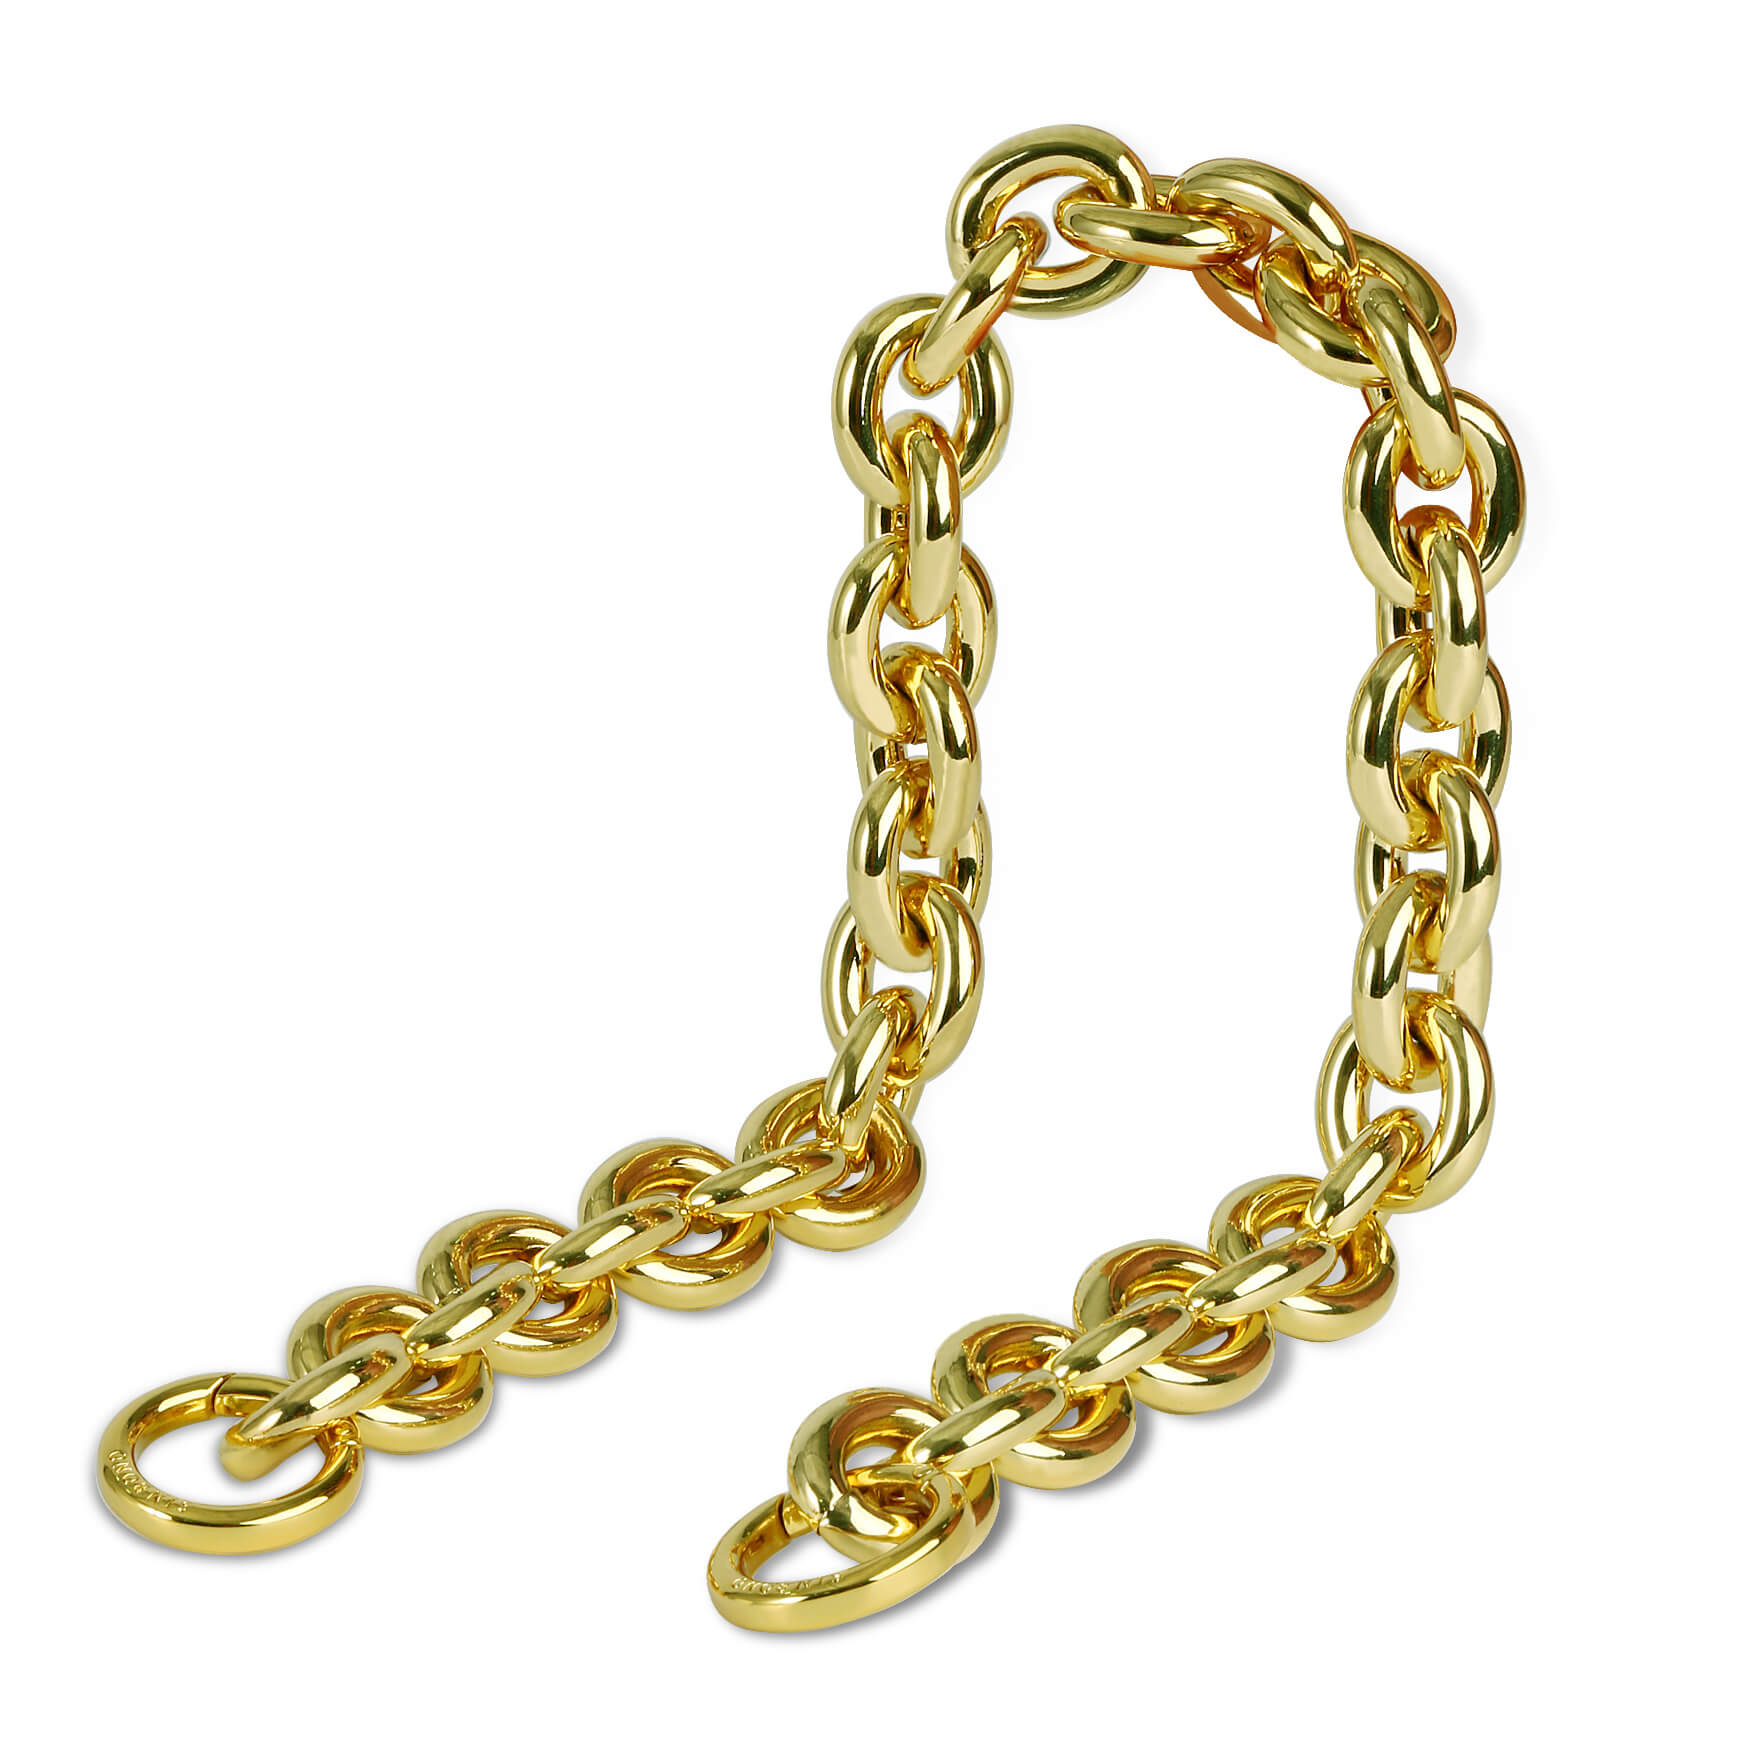 European Word Chain Strap - Gold